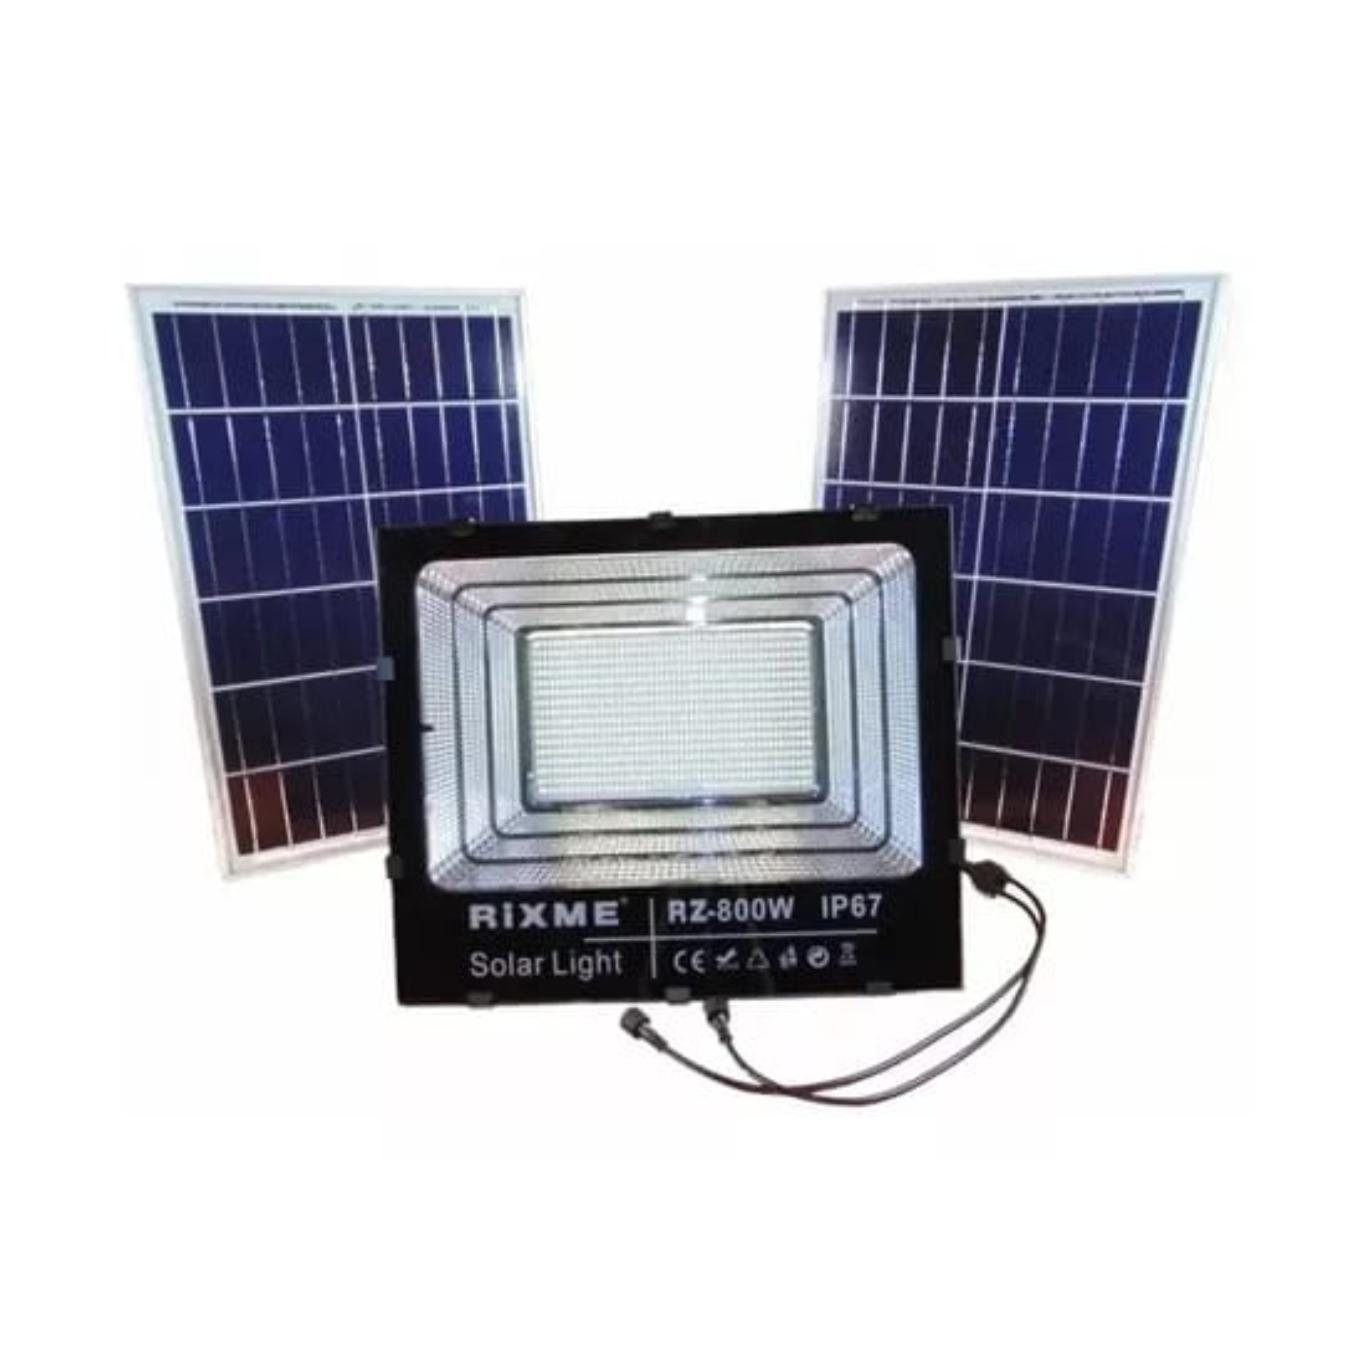 Reflector solar Rixme de 800 W